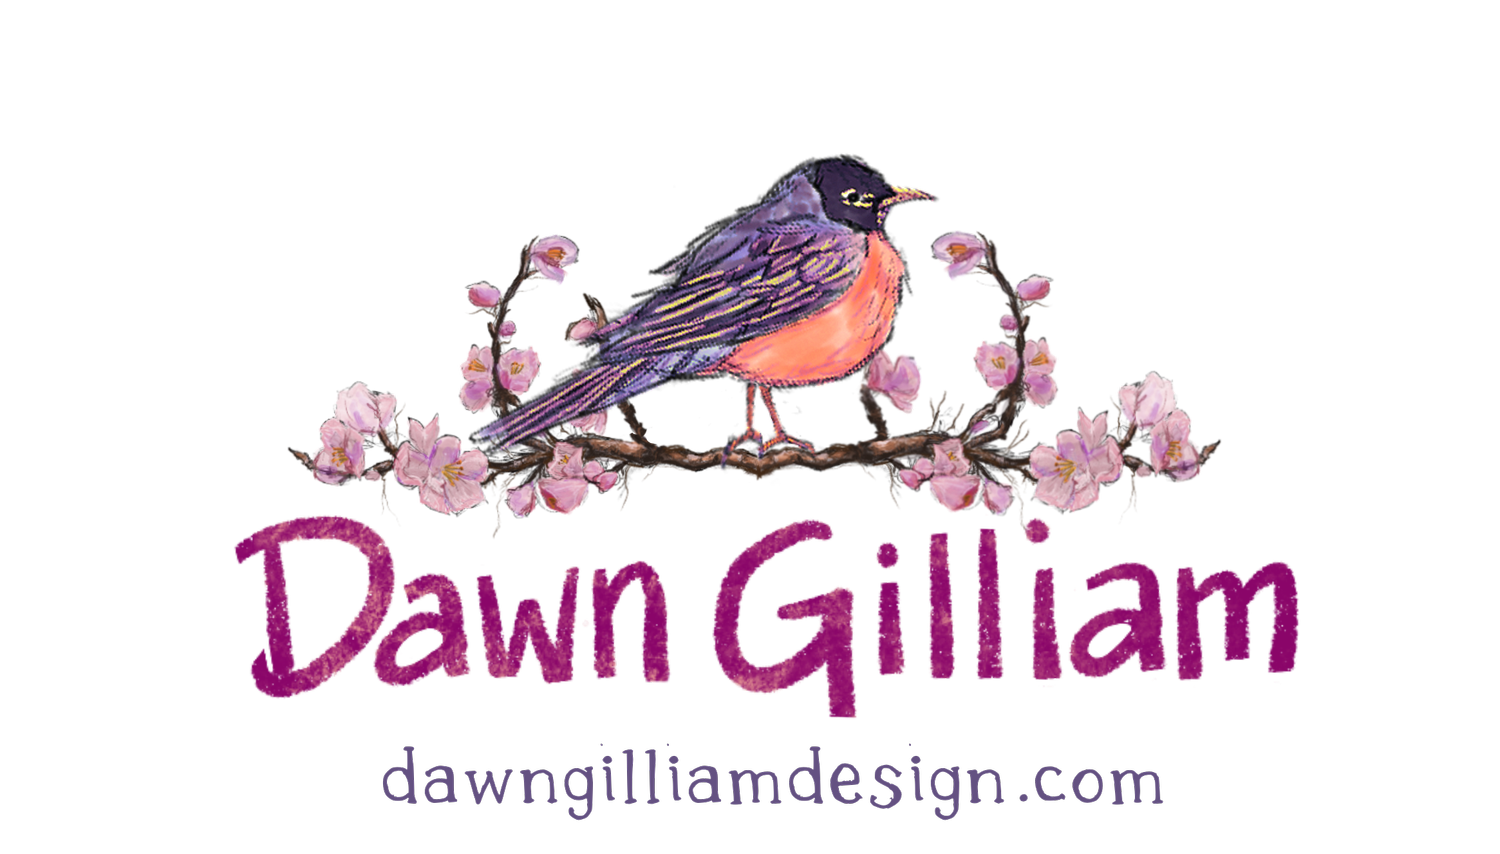 Dawn Gilliam design